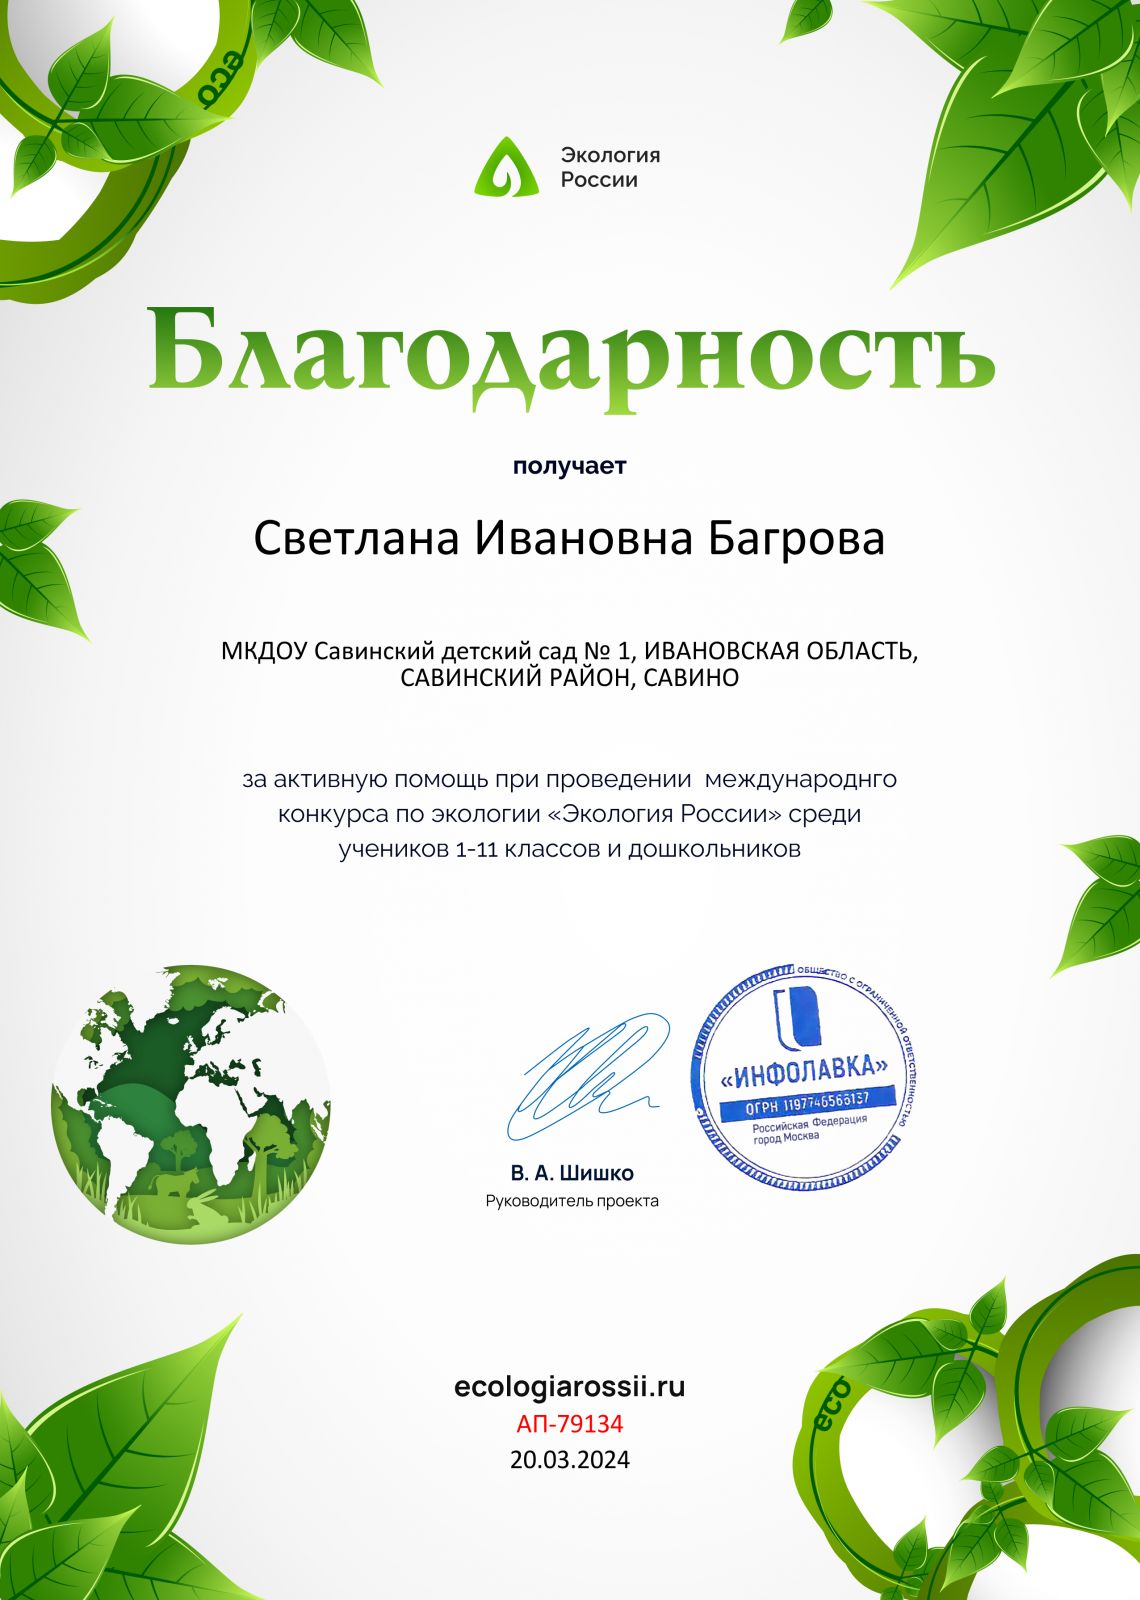 blagodarnost-ot-proekta-ecologiarossii.ru-79134